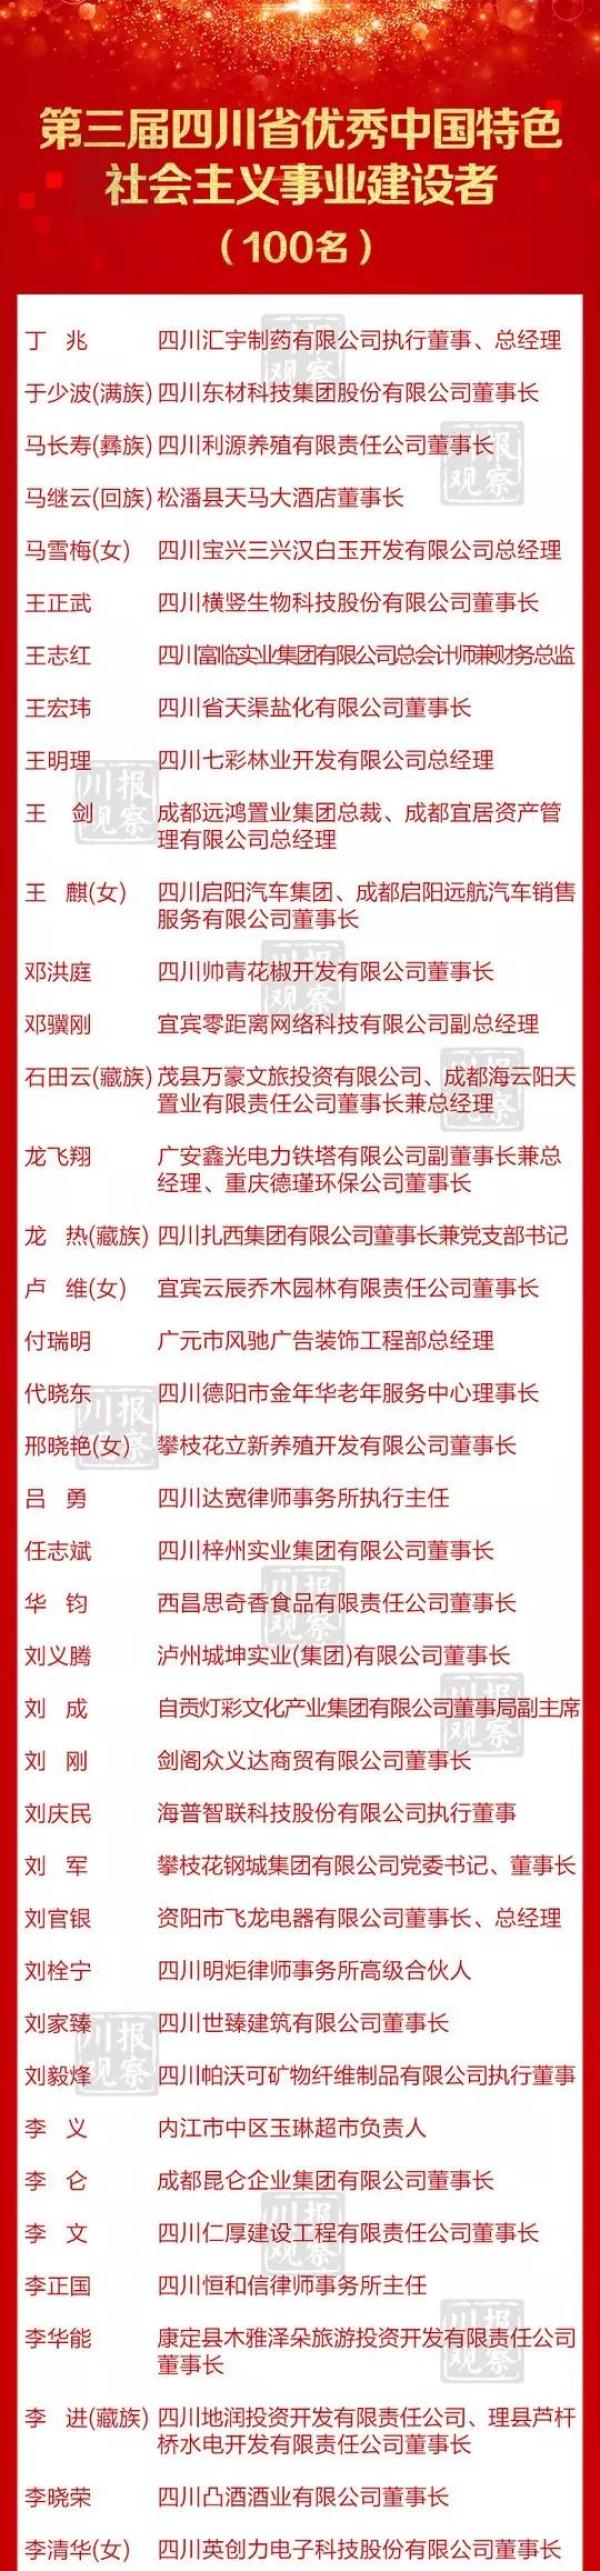 四川表彰100名优秀中国特色社会主义事业建设者